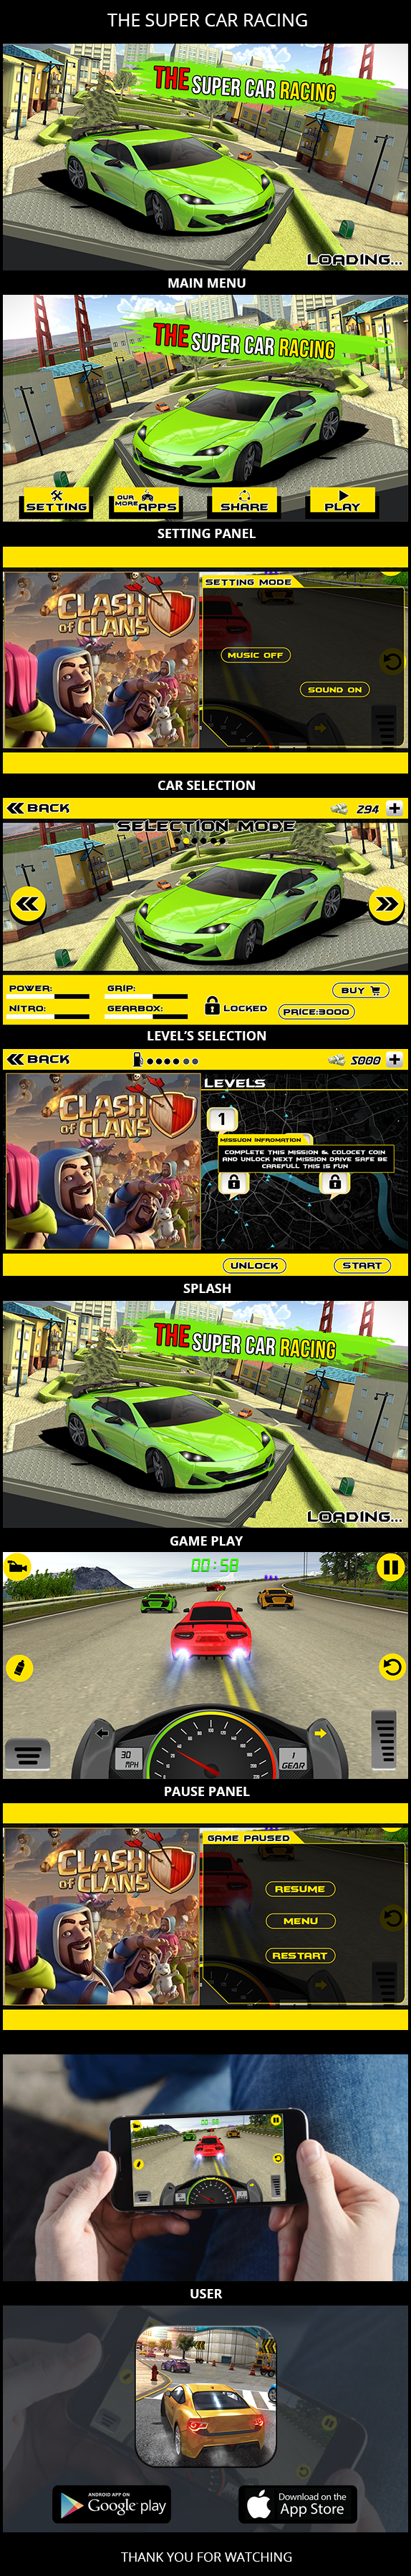 car racing ui Super car racing ui designs car games ui Racing Game UI